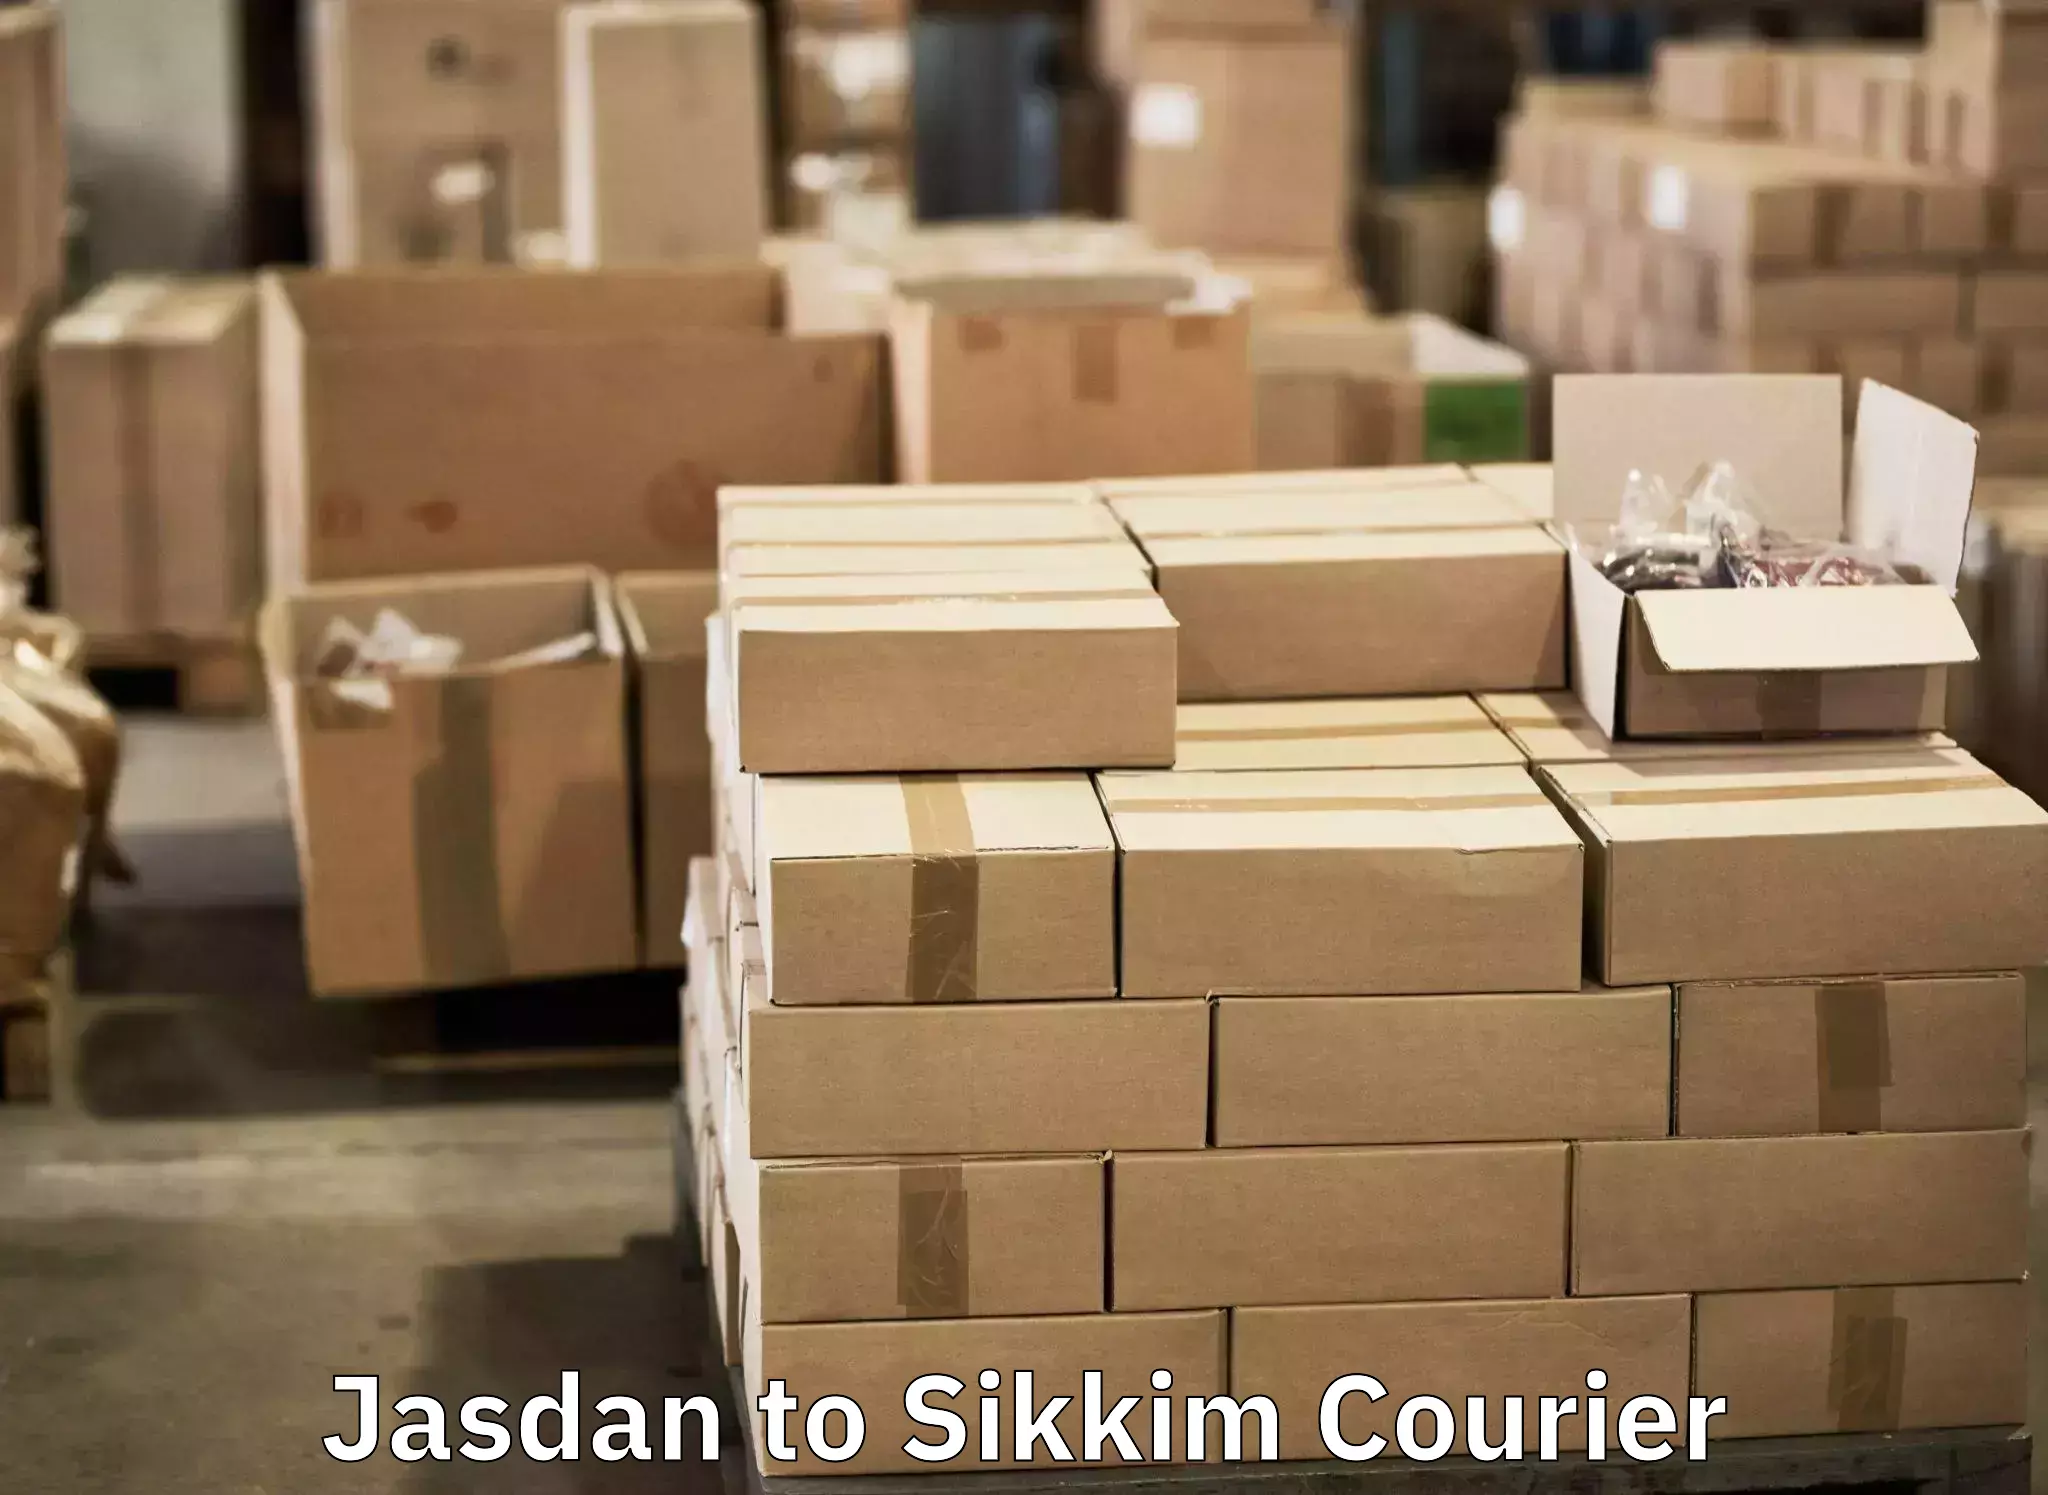 Luggage shipment specialists Jasdan to Sikkim